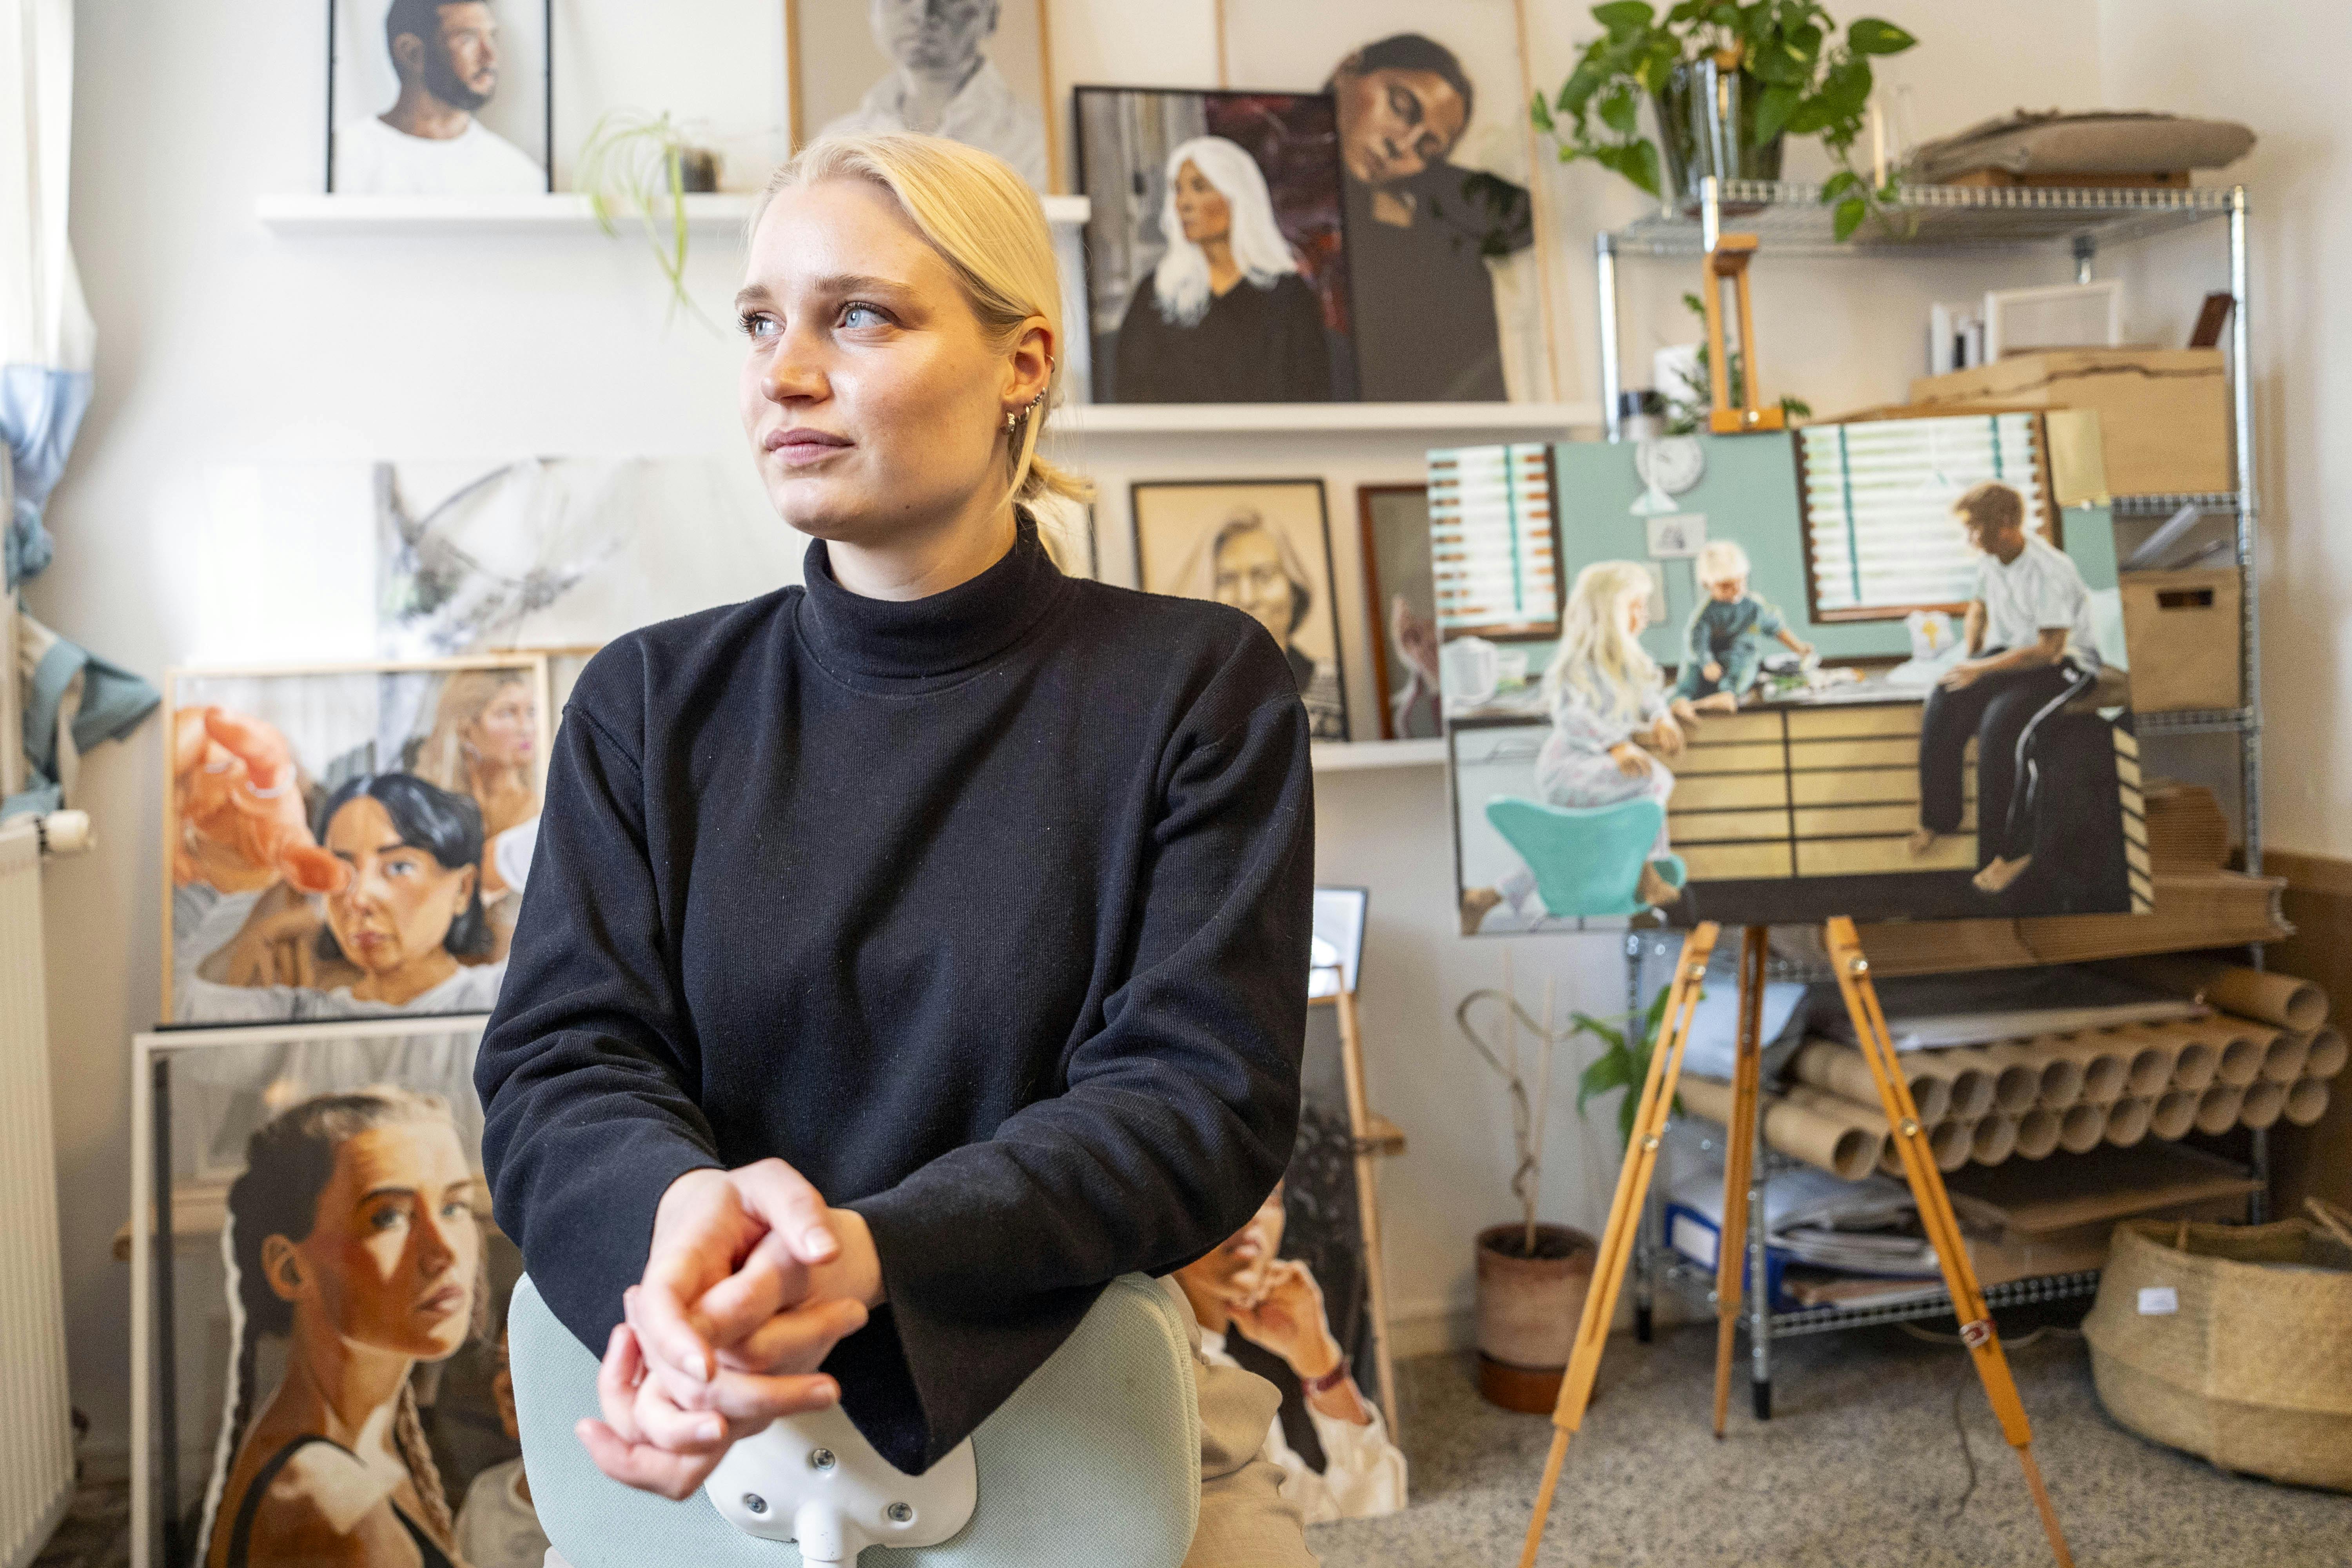 Mathilde er vinderen af konkurrencen Danmarks Bedste Portrætmaler. Hun har en hel særlig historie ind i kunsten, og hun har også en særlig måde at male sine portrætter.Hun fortæller om sin vej til at blive Danmarks bedste.